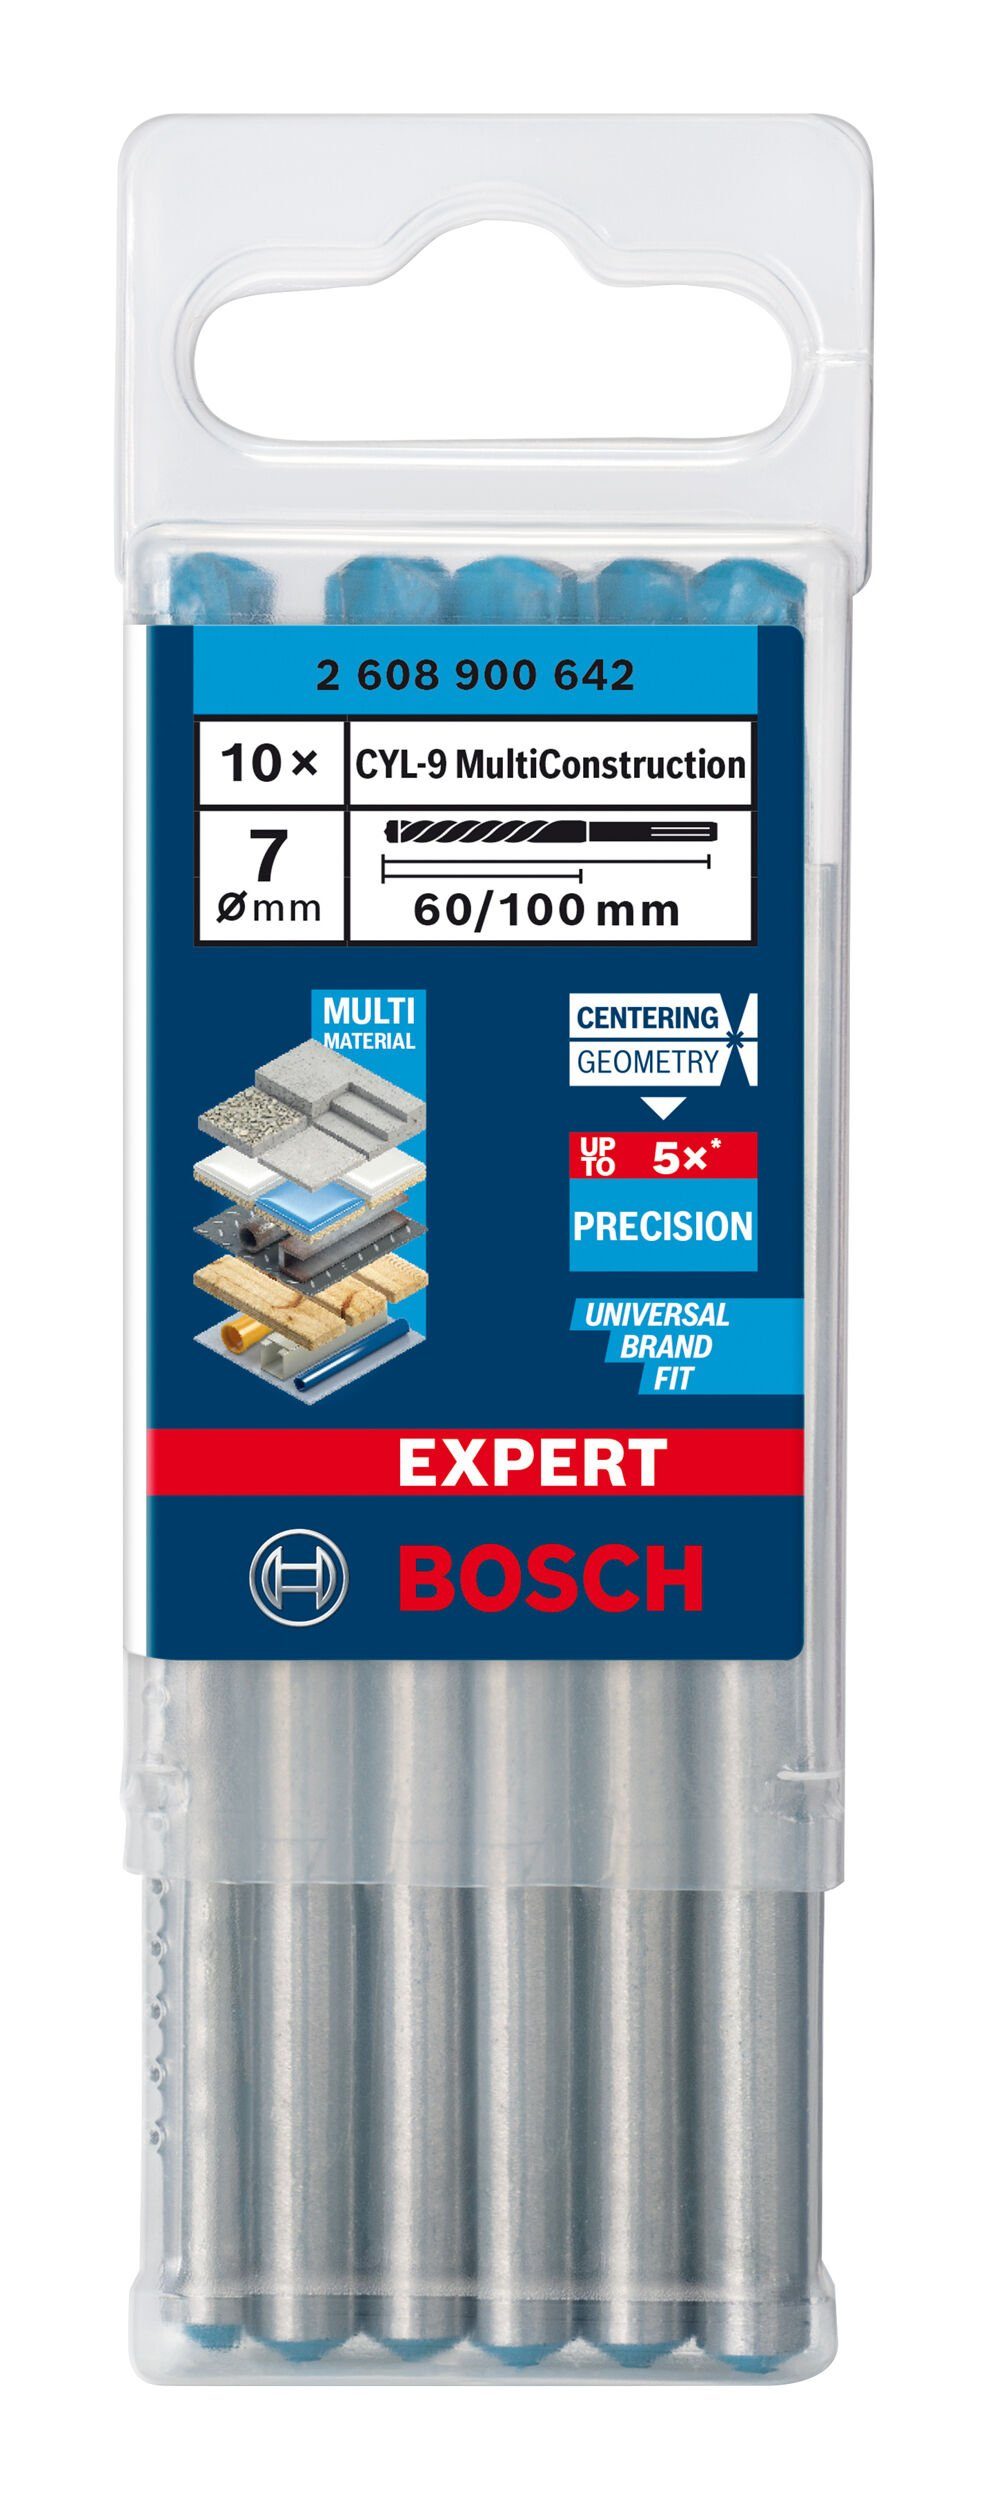 BOSCH Universalbohrer Expert Construction CYL-9 Expert - 10er-Pack CYL-9 100 60 Multi - x x Stück), 7 mm (10 MultiConstruction